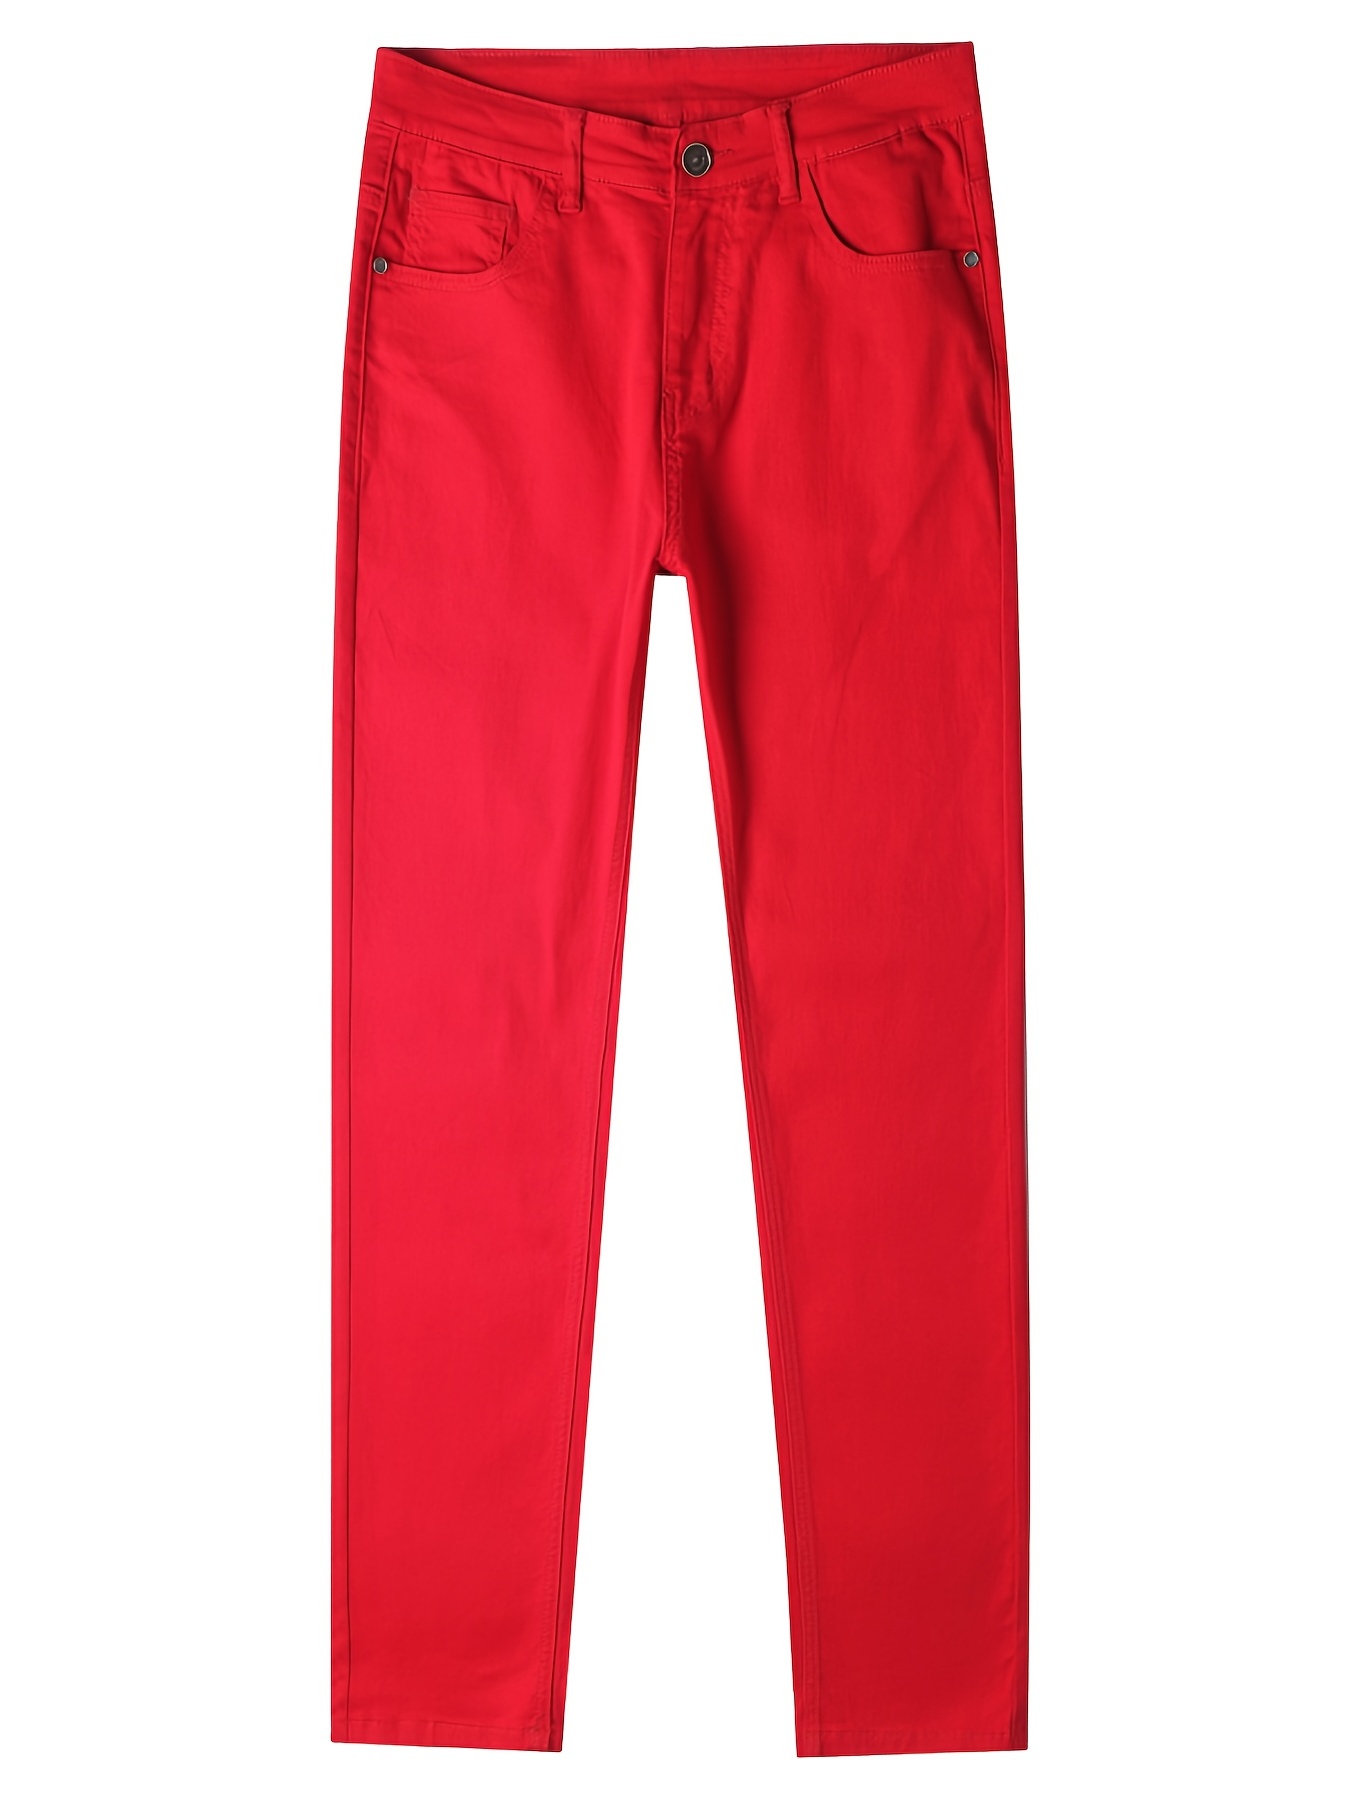 Men's Red Jeans Vintage Slim Fit Denim Pants - Temu United Arab